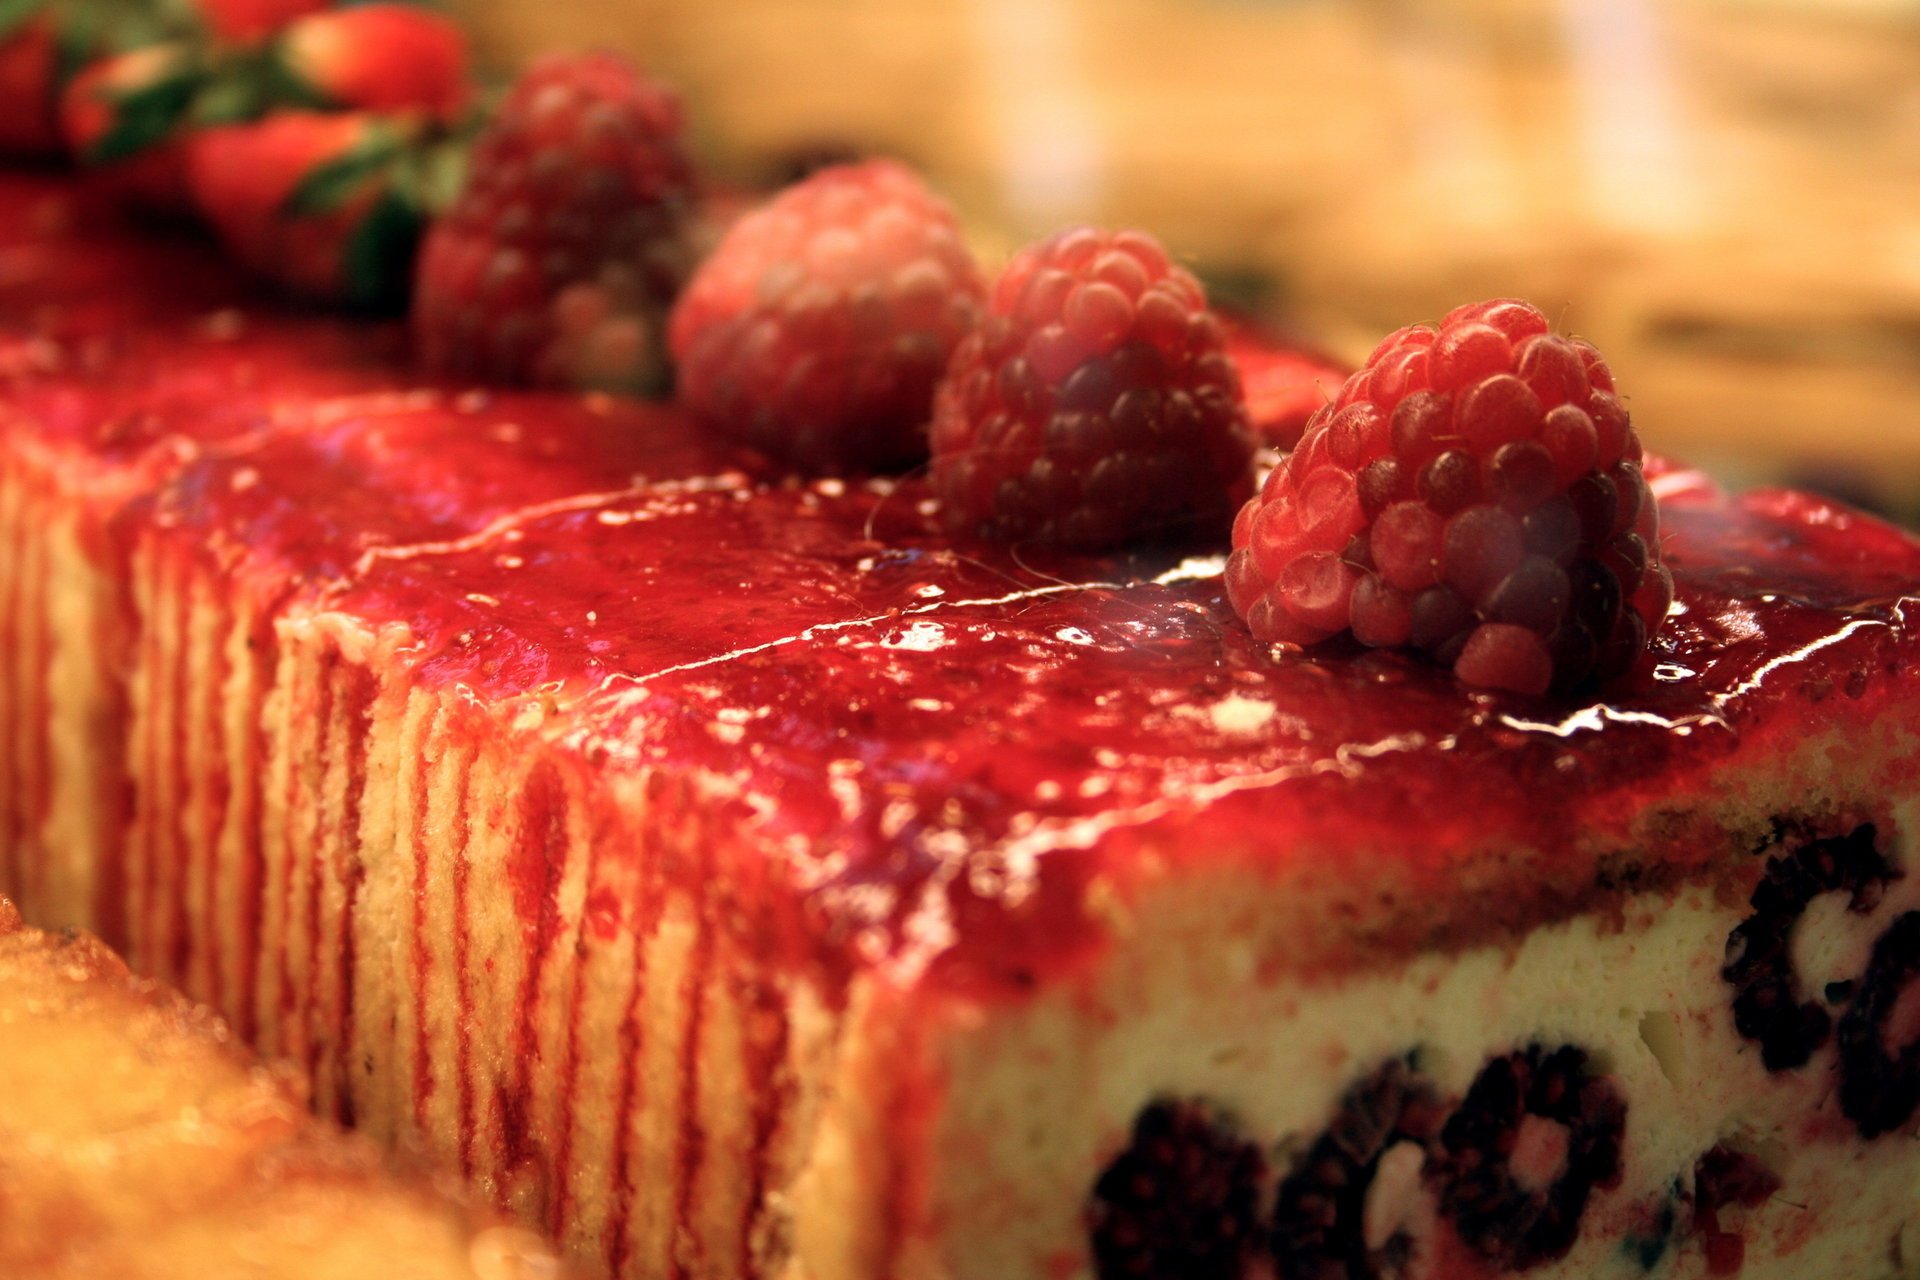 Пирожное с красным сиропом украшено свежей малиной